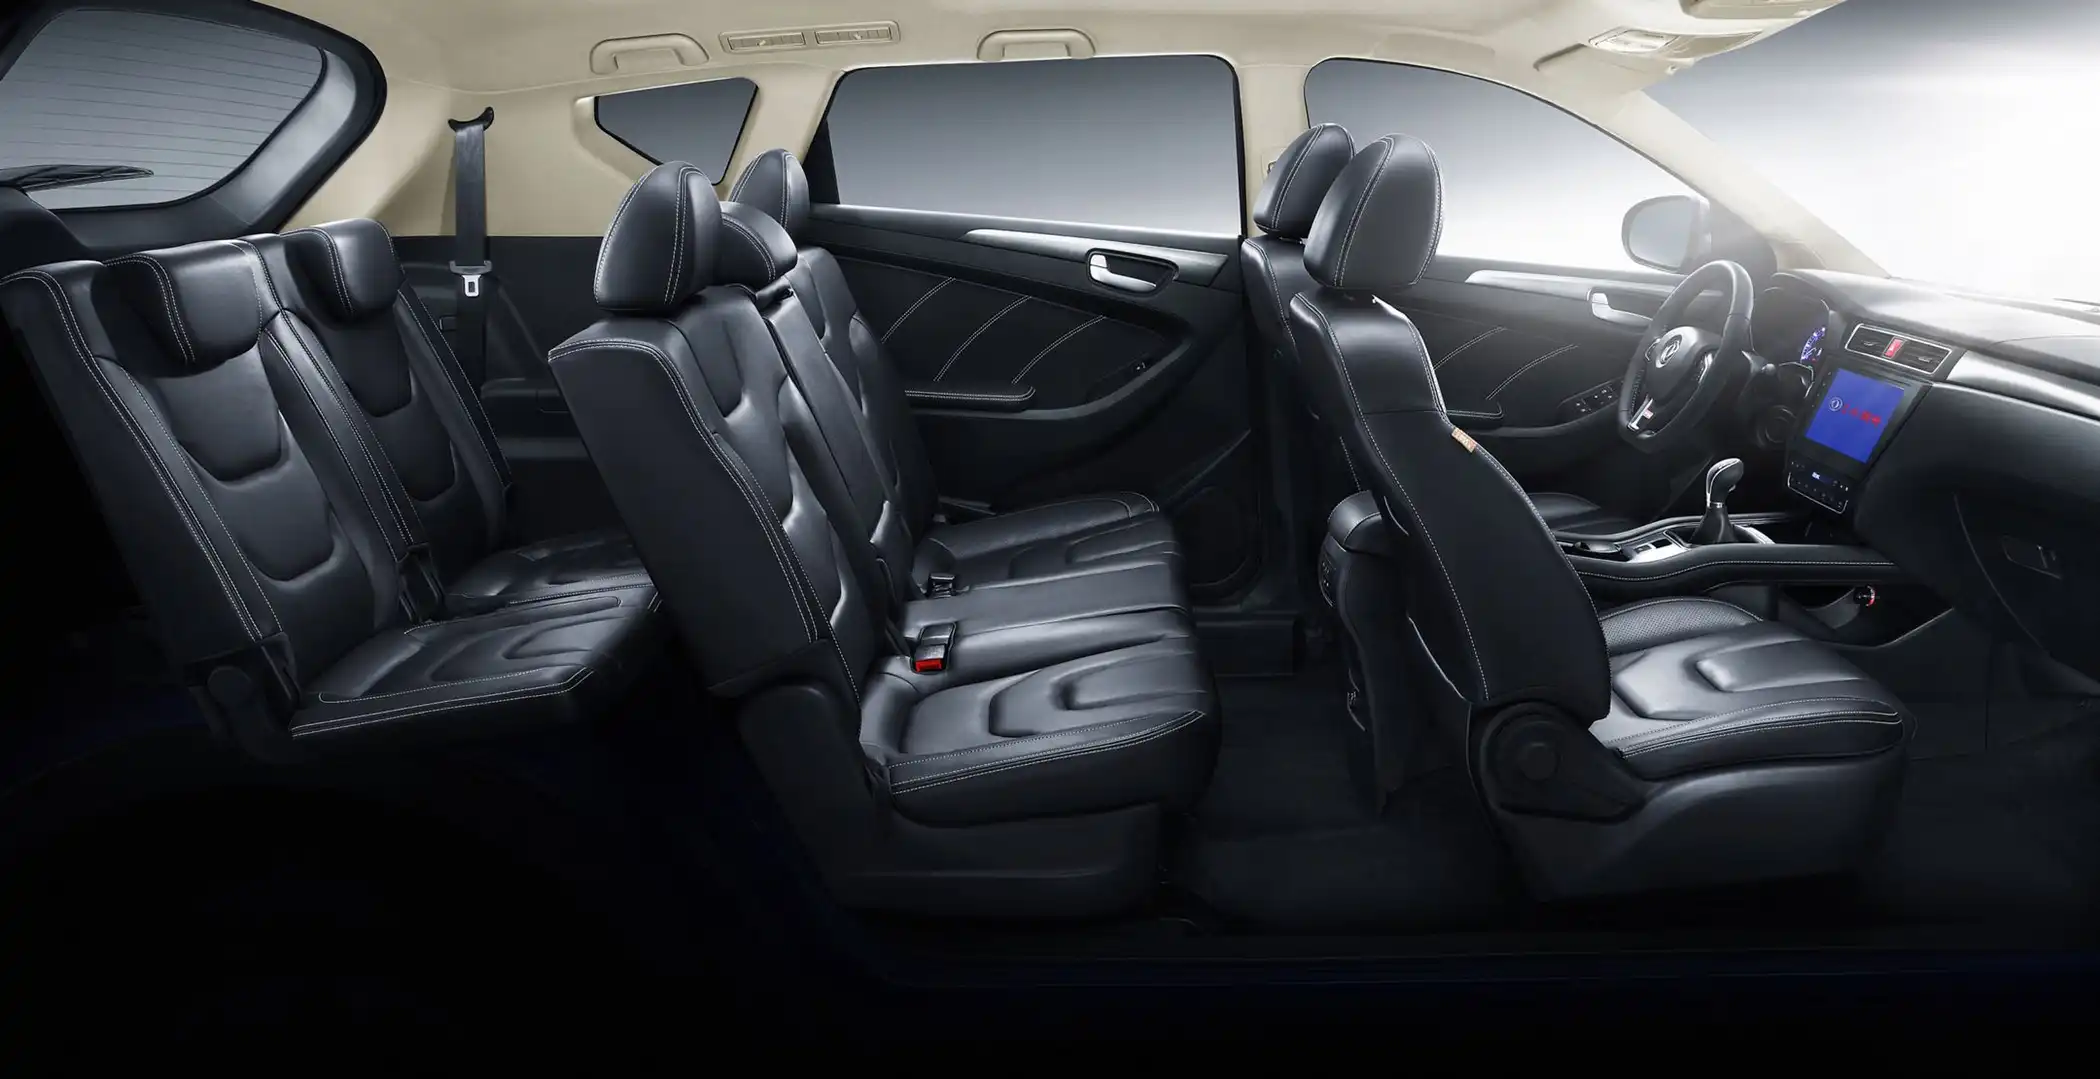 El Diseño Interior del DFSK 580 PRO es un SUV de lujo para 7 pasajeros en sus 3 filas de asientos.